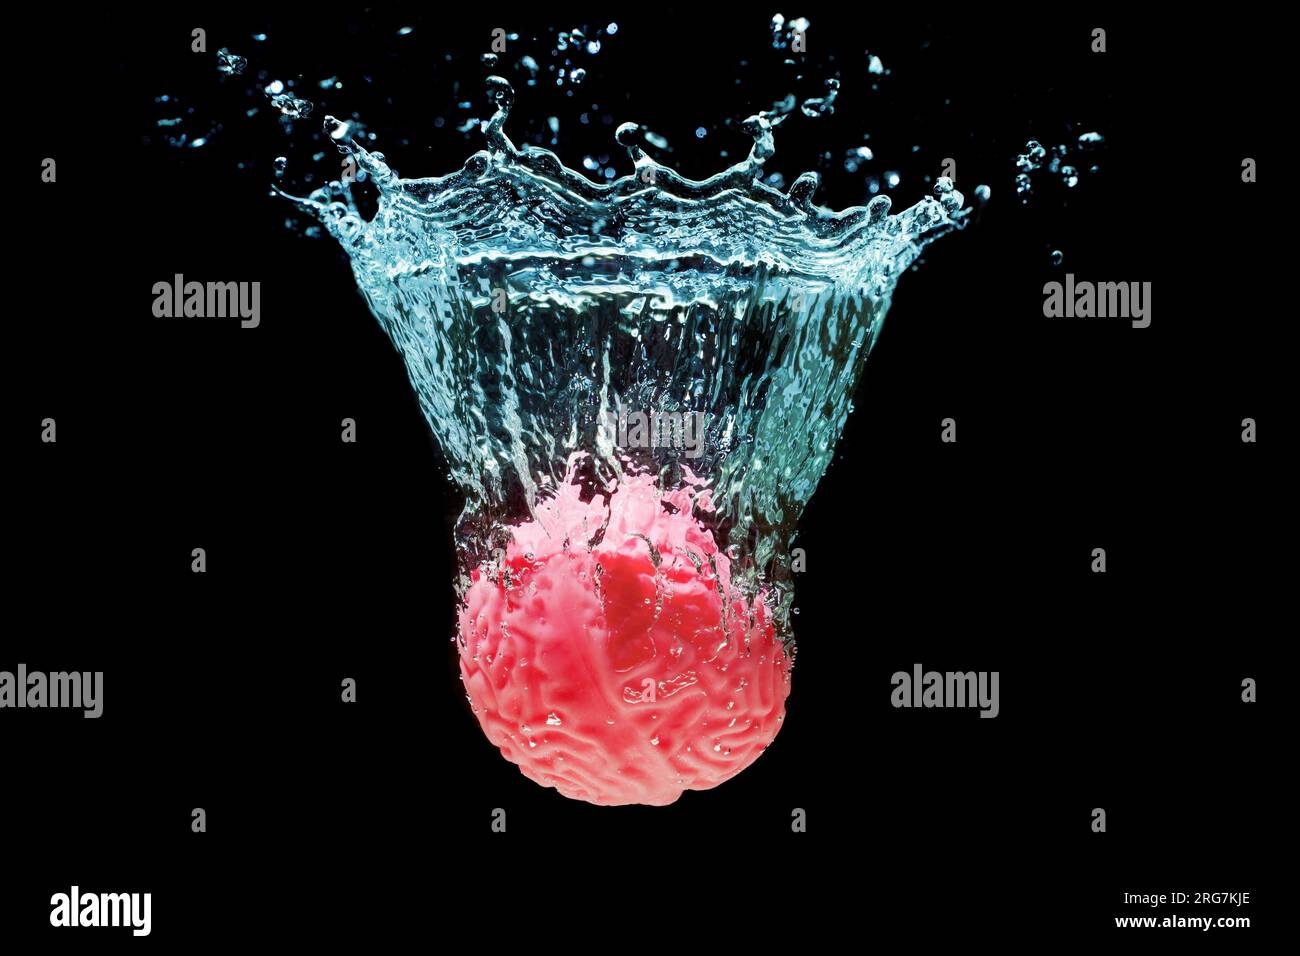 Replica anatomica rosa di un cervello umano immerso nell'acqua con schizzi isolati su nero. Viaggio profondo di scoperta ed esplorazione di sé stessi. Foto Stock